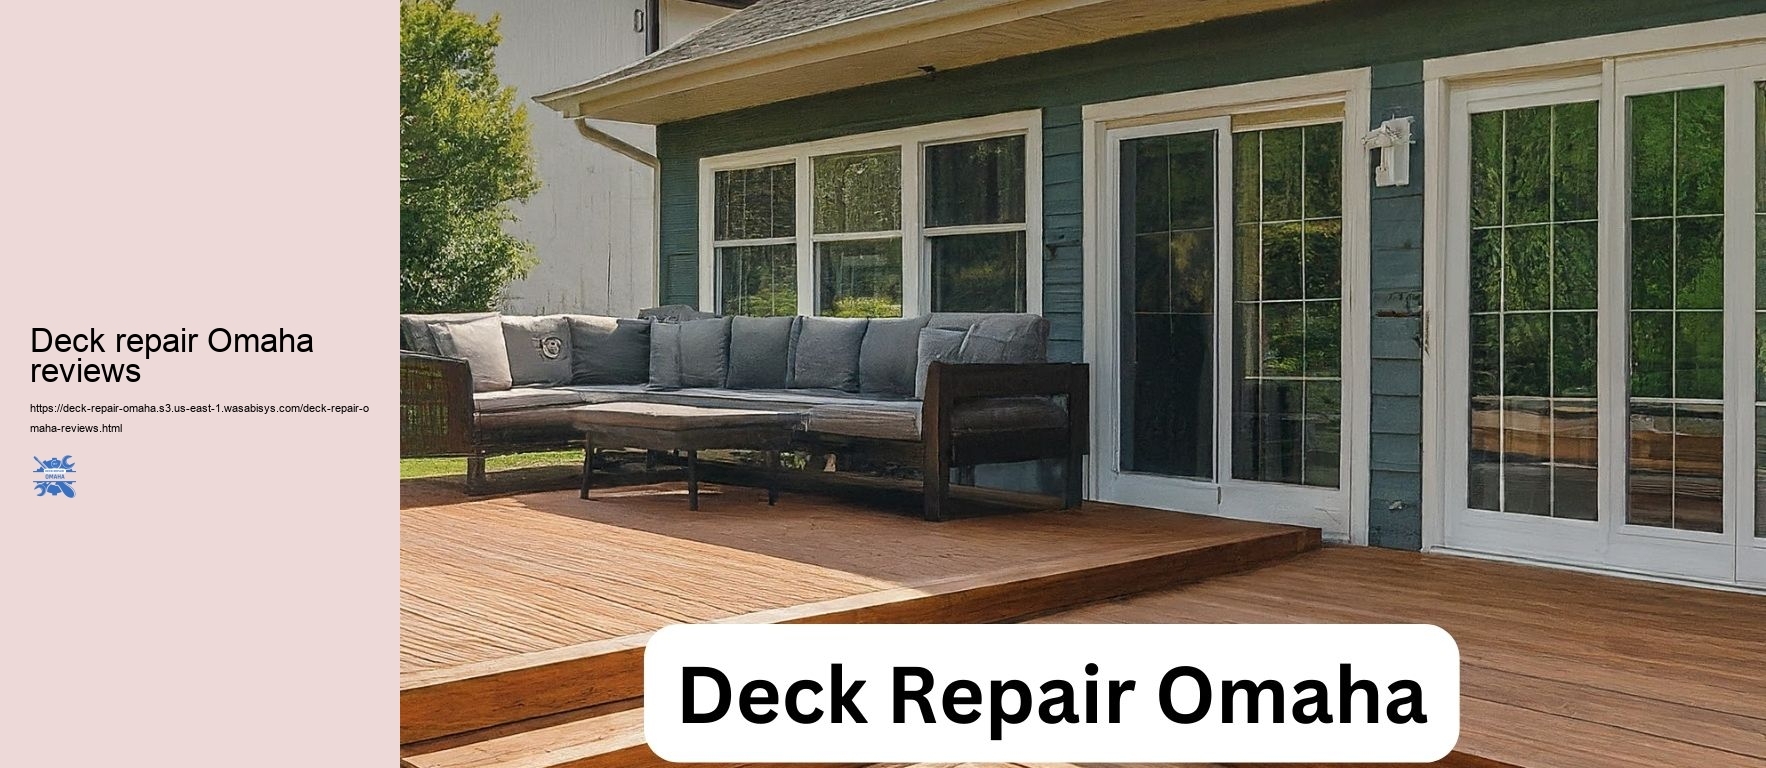 Deck repair Omaha reviews